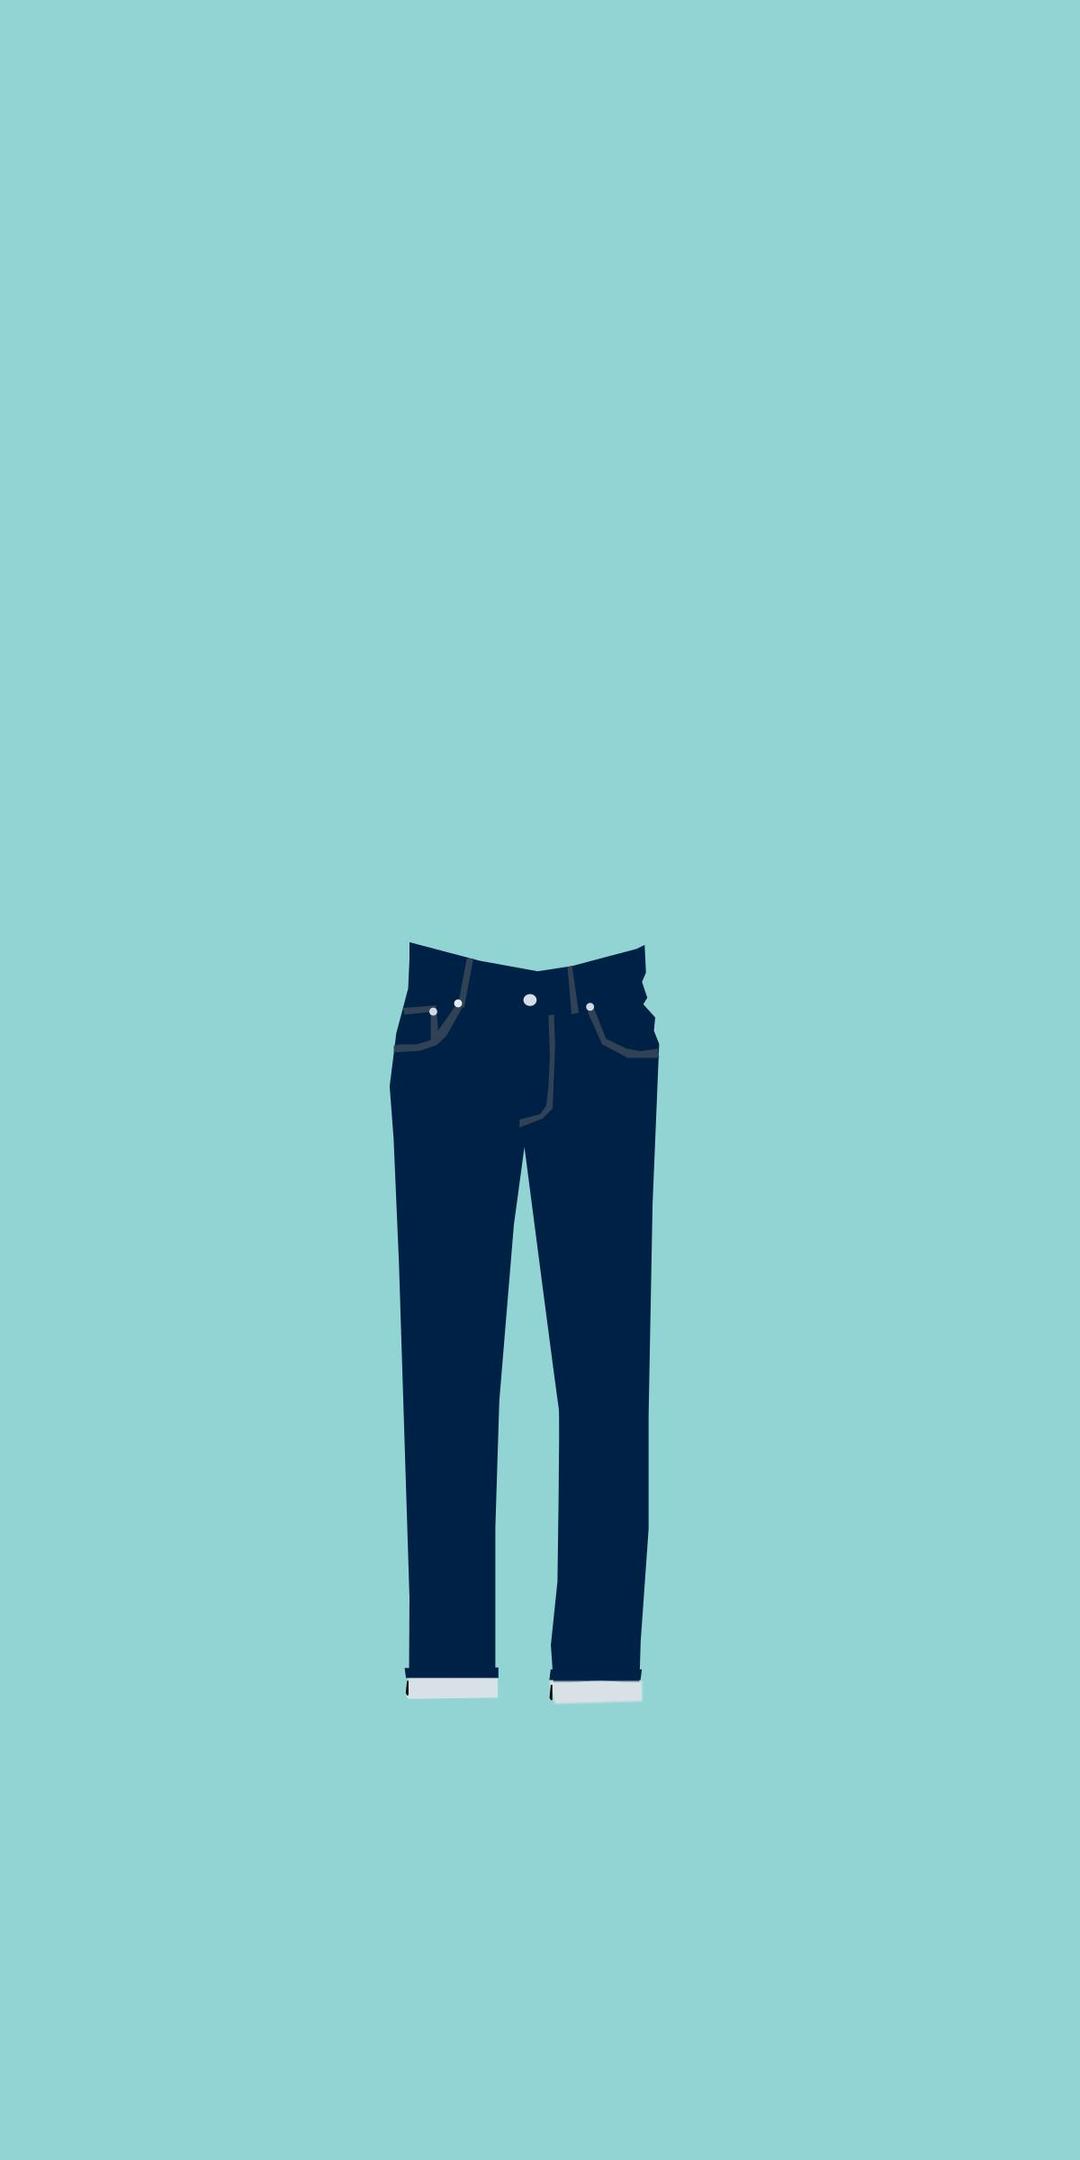 jeans-01 png transparent